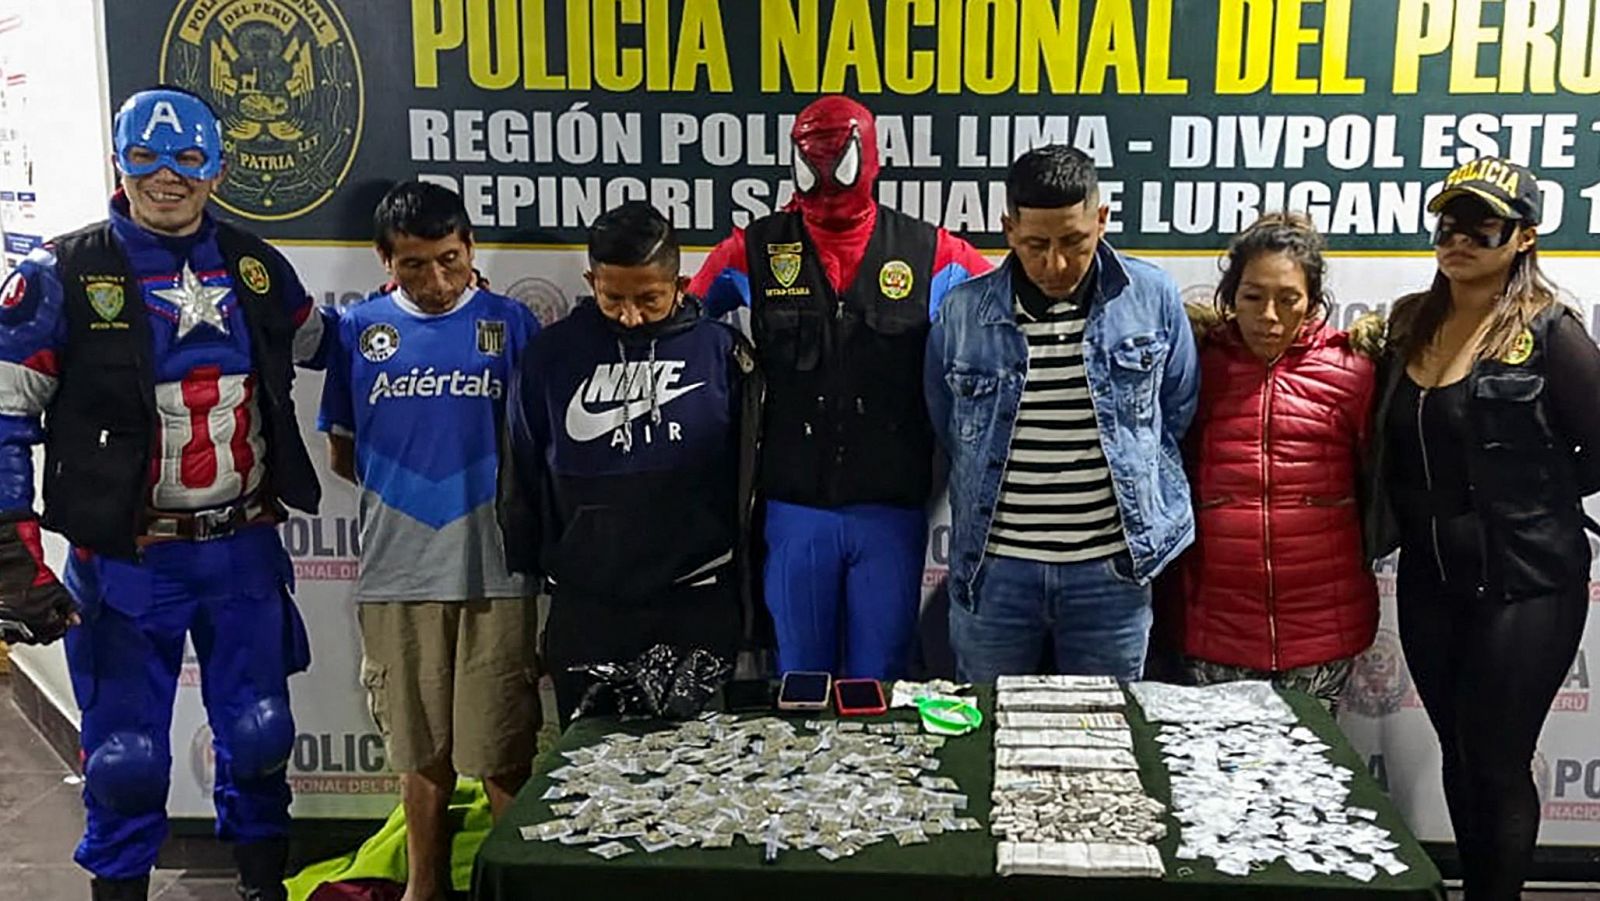 Policías disfrazados de superhéroes luchan con la droga en Perú